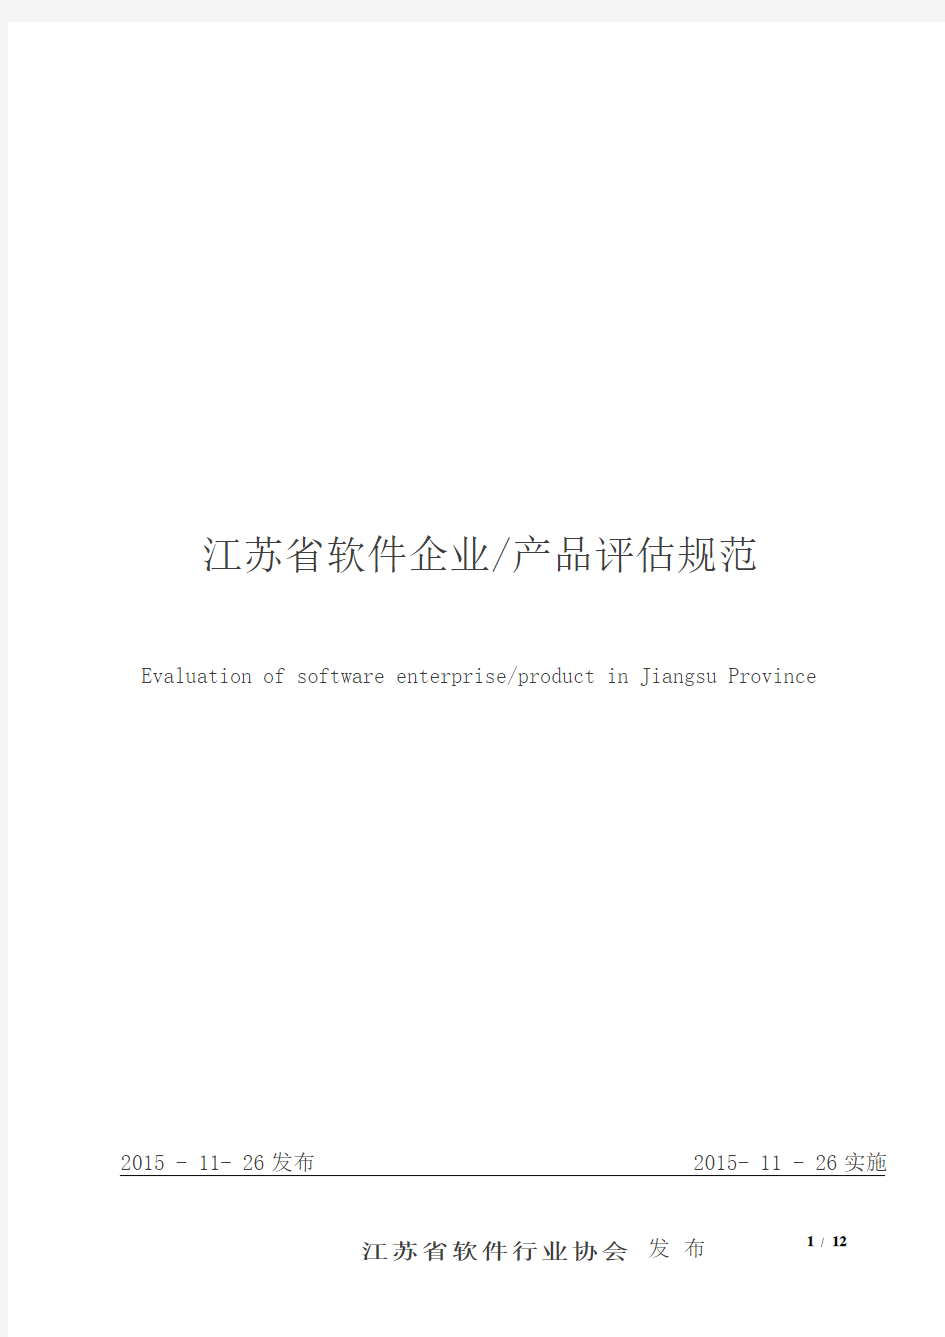 江苏省软件企业产品评估规范